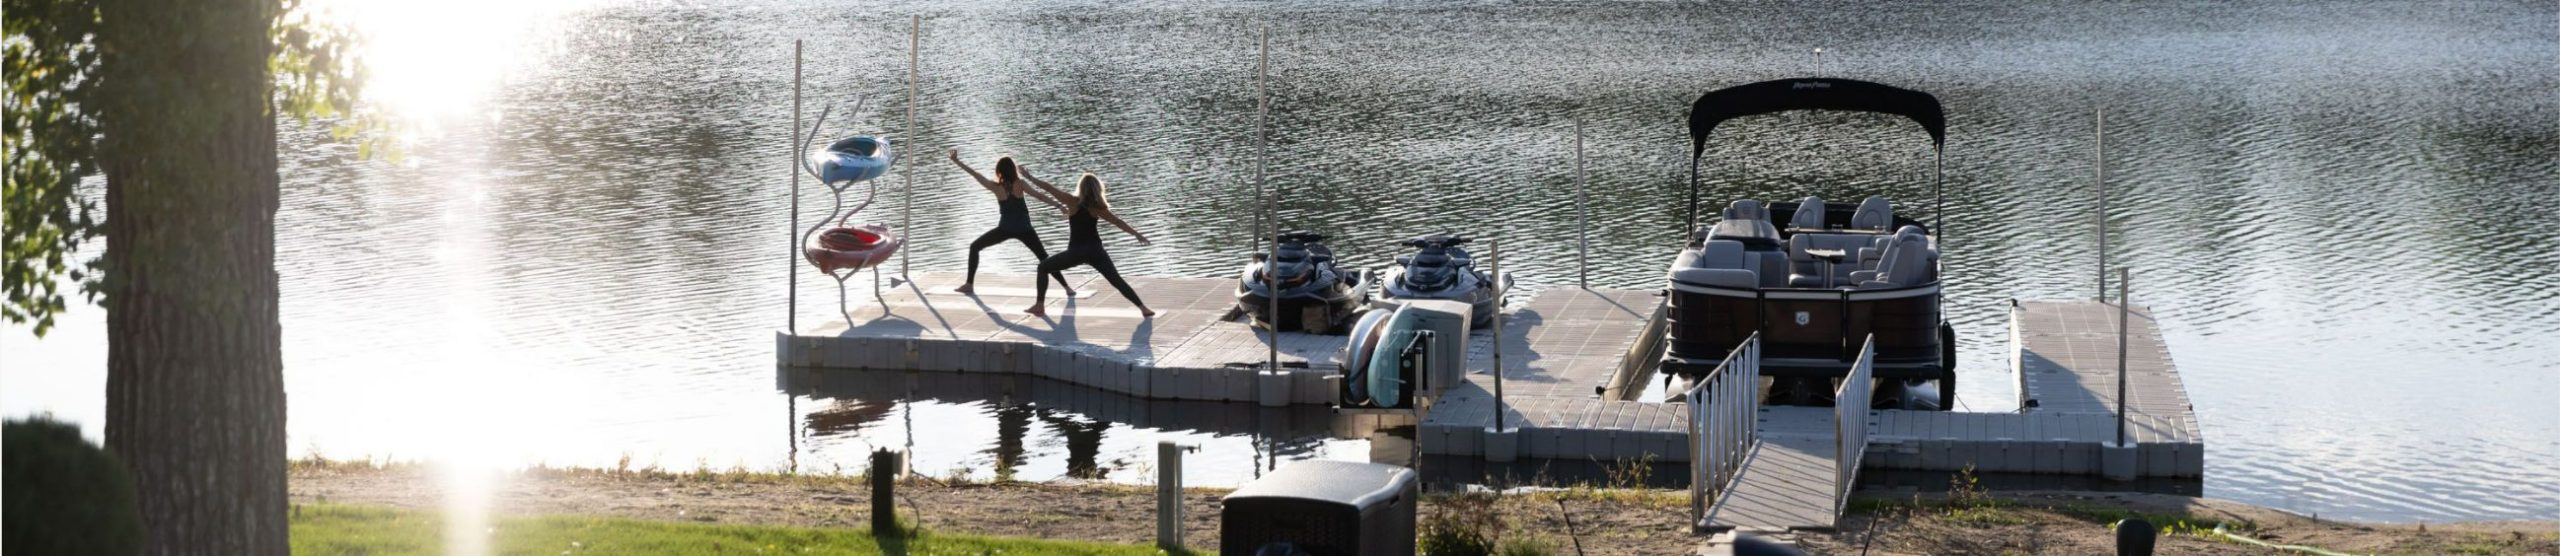 2 mujeres haciendo yoga en el muelle de un barco